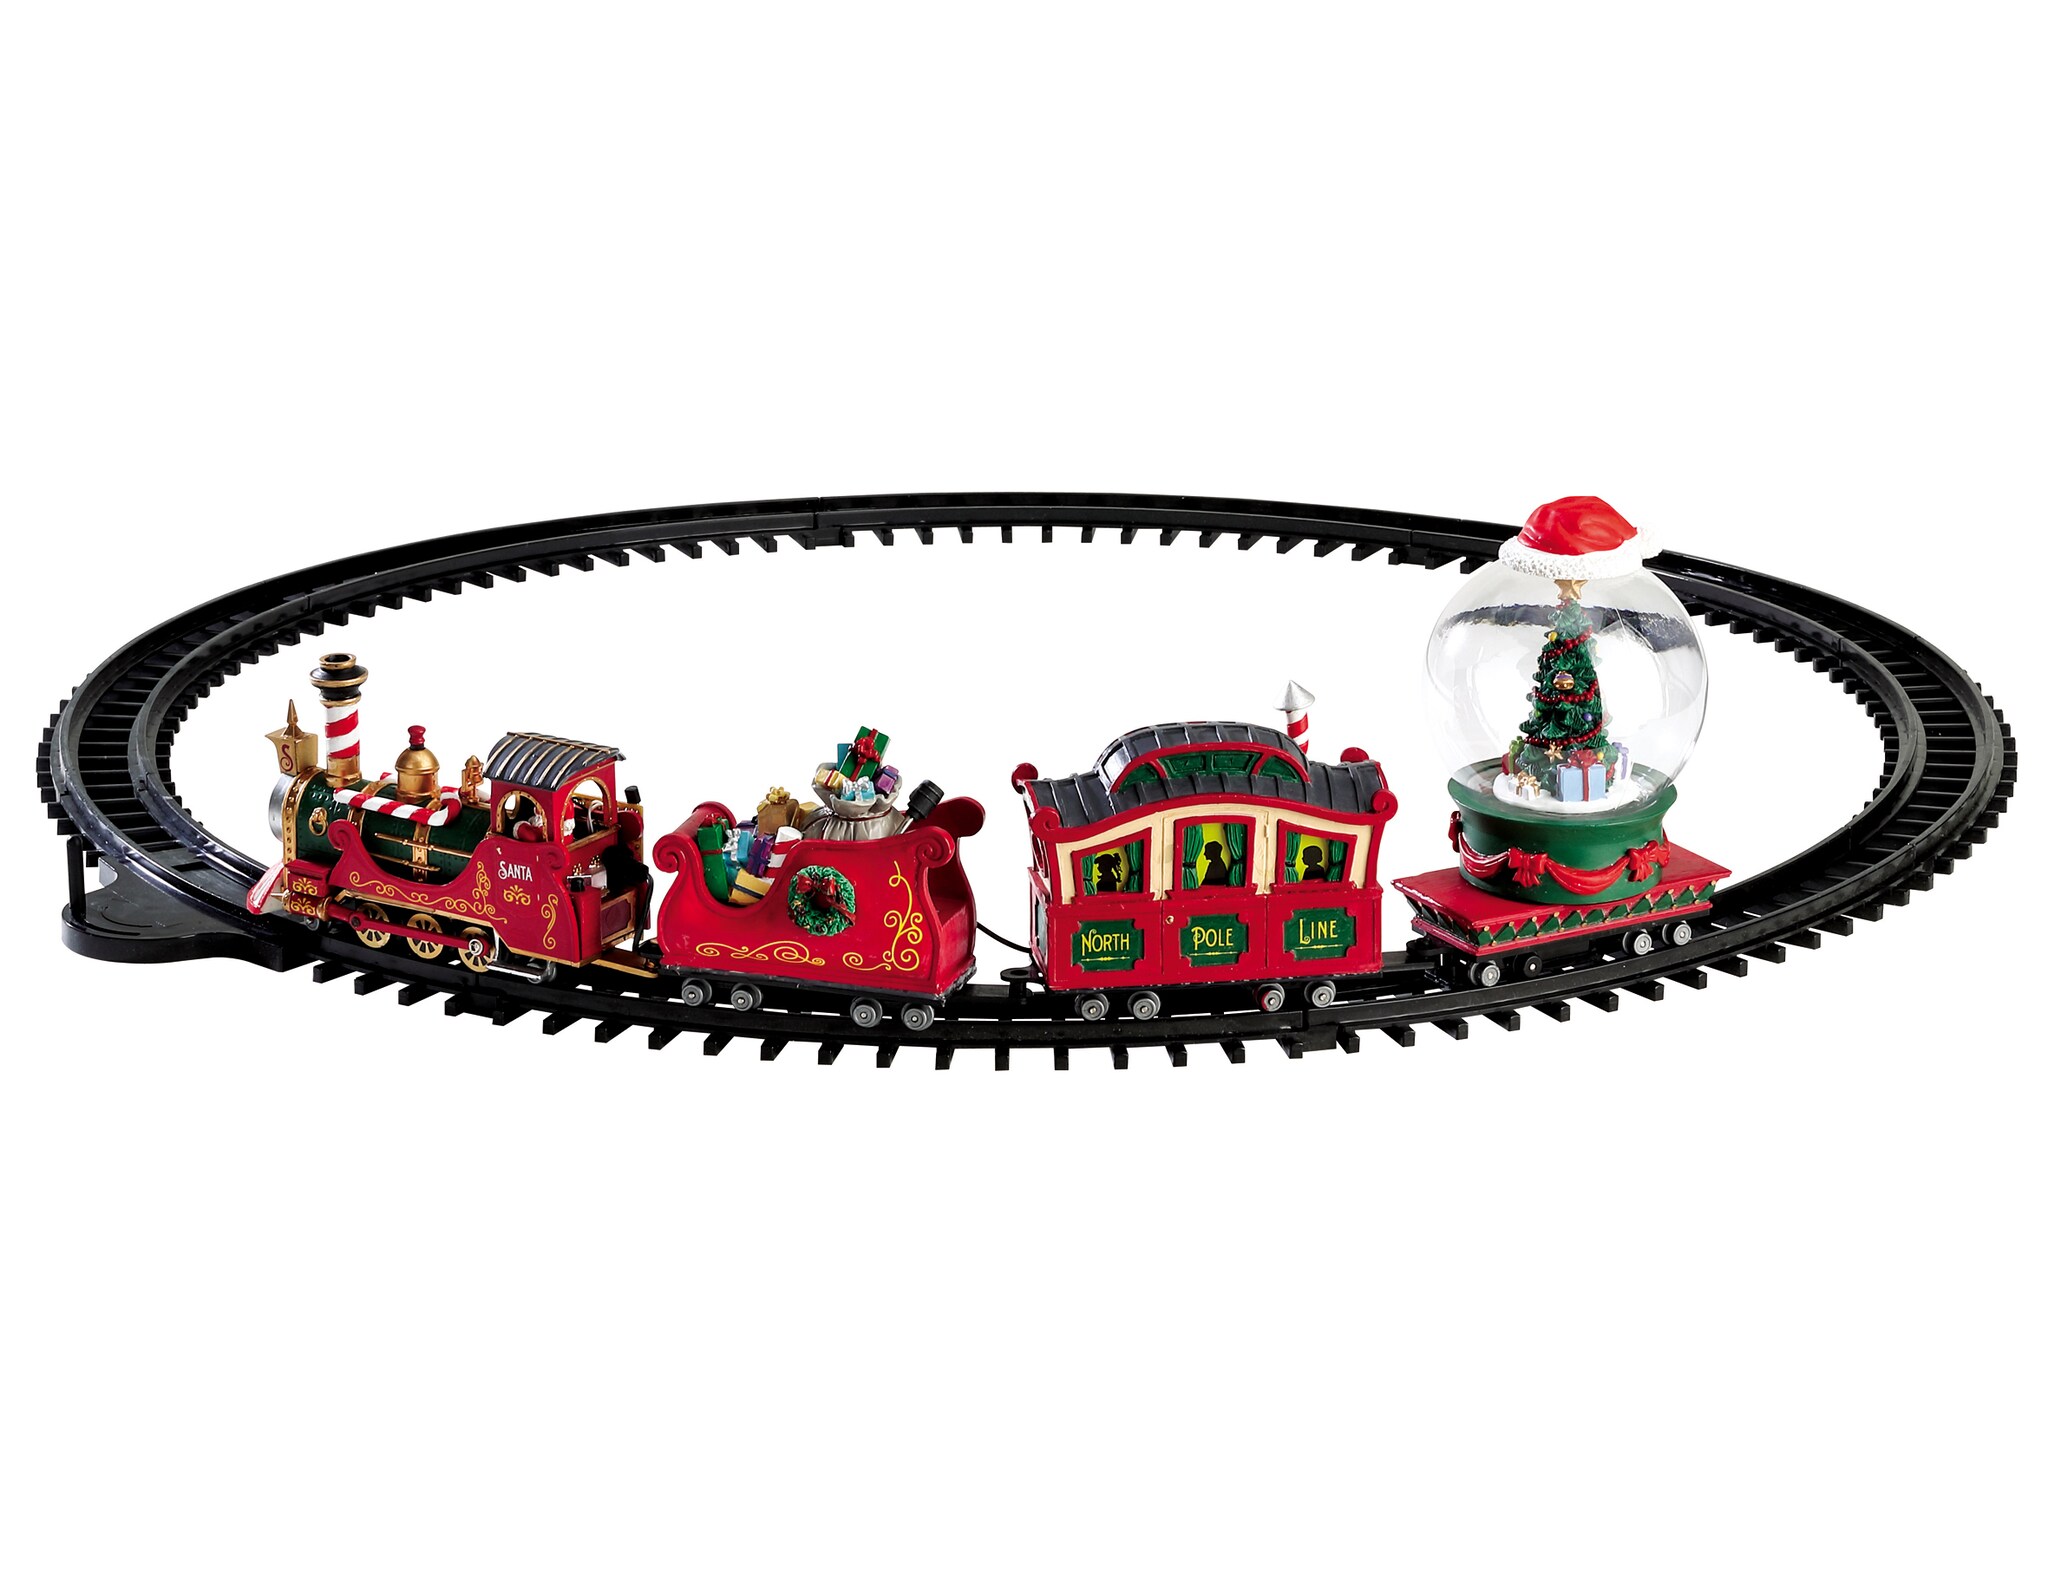 Trenino di Natale North pole railway con locomotiva, slitta di doni, vagone passeggeri e palla di vetro. Funziona a batteria. LEMAX (66,5 x 113 x 15 cm; 92,99 €).